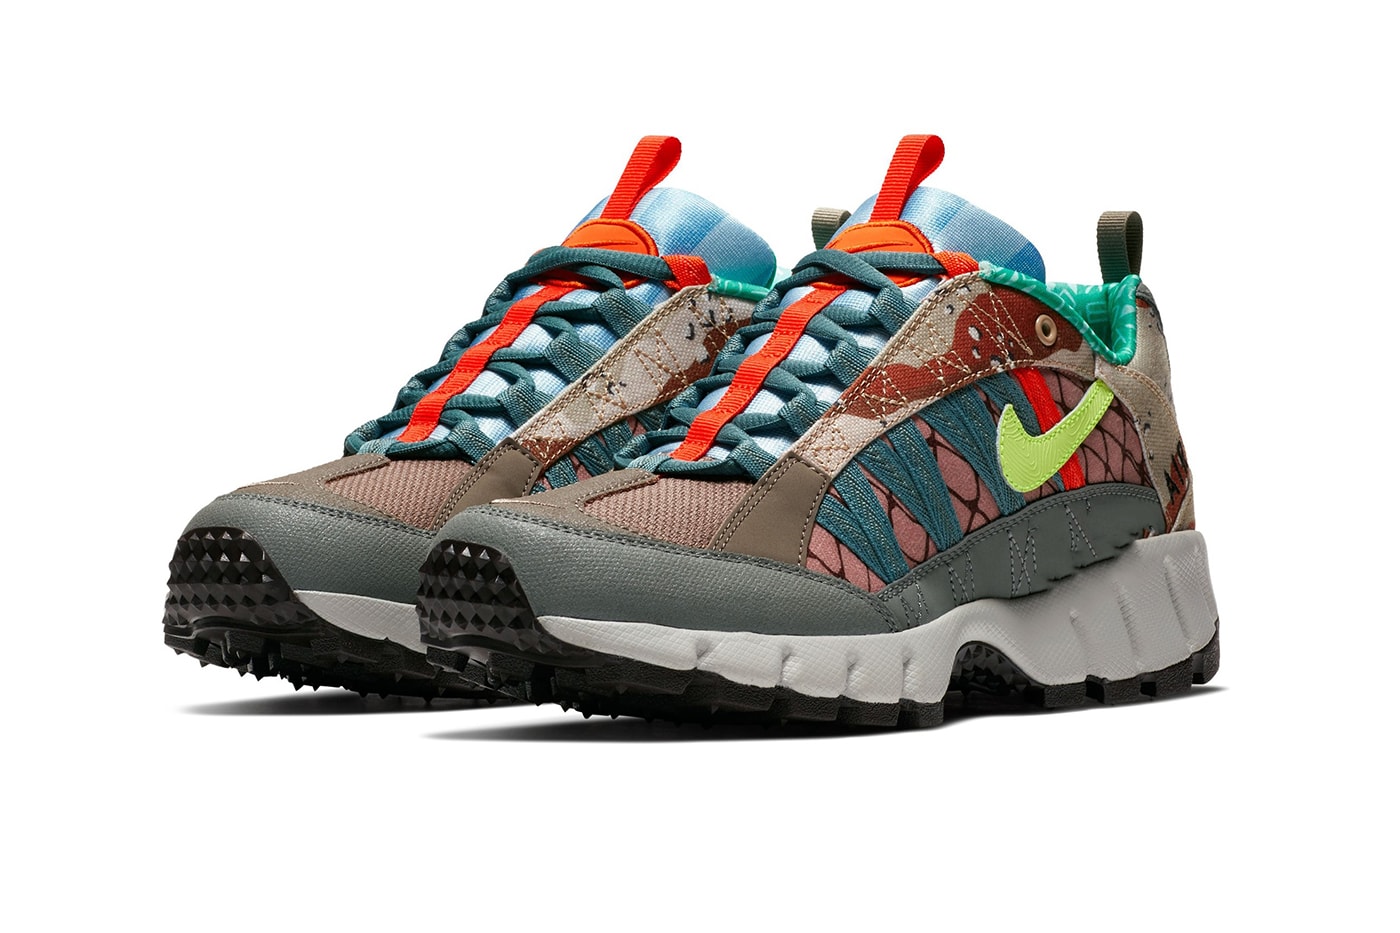 Nike Air Humara Hiking Trail Runners Sneakers Footwear 2018 Release